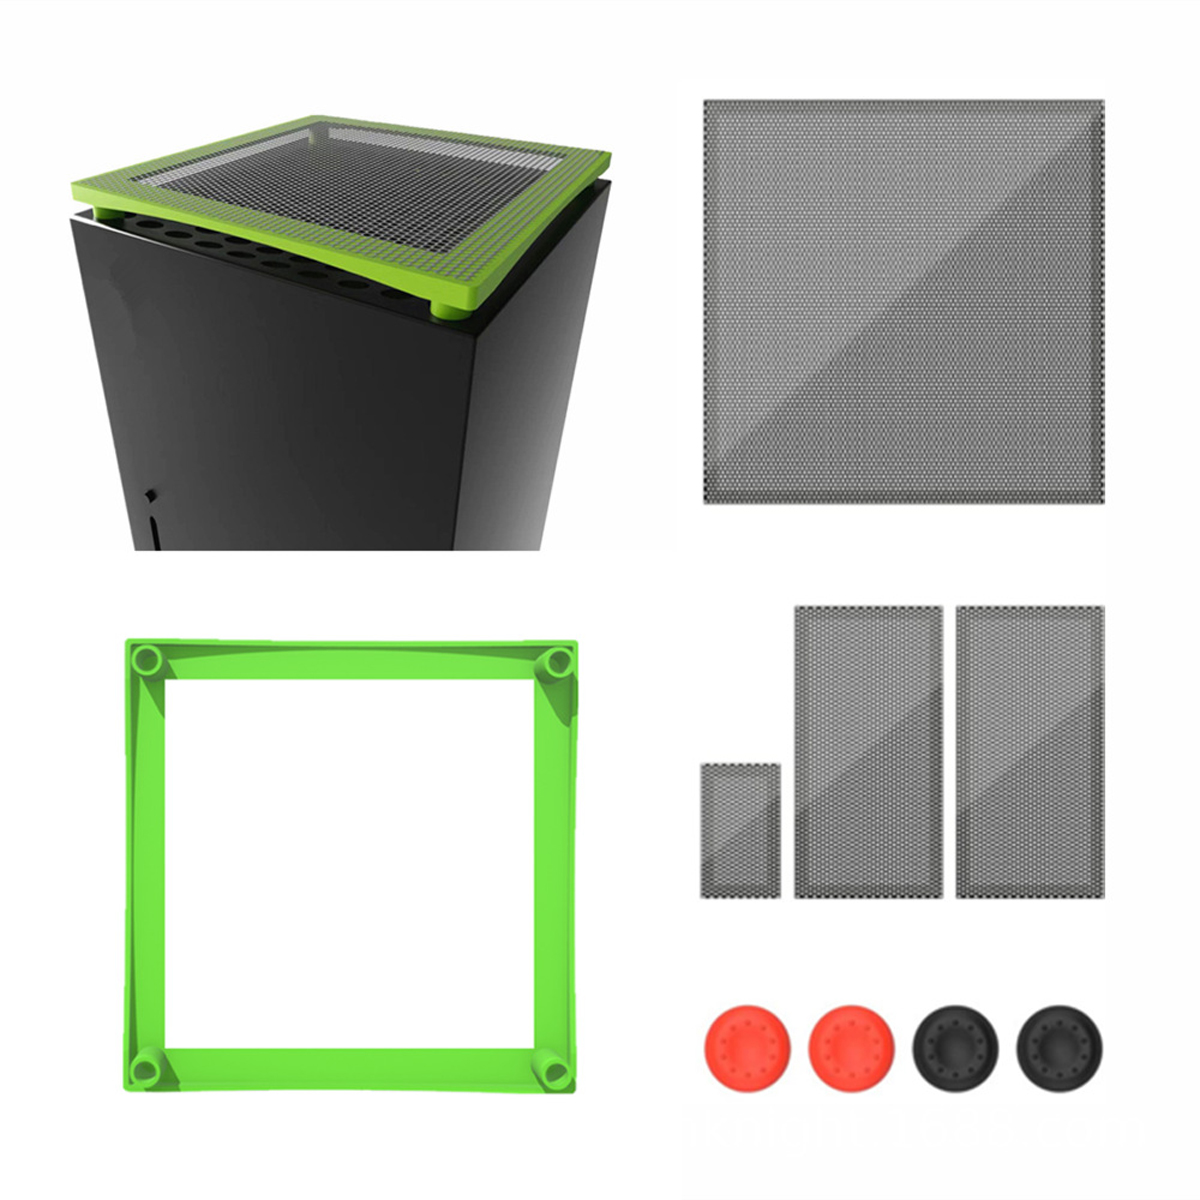 TADOW Staubnetz Für Xbox, und Grau Staubfilter-Kühlungsset, Multifunktionales Konsolenzubehör, Grün